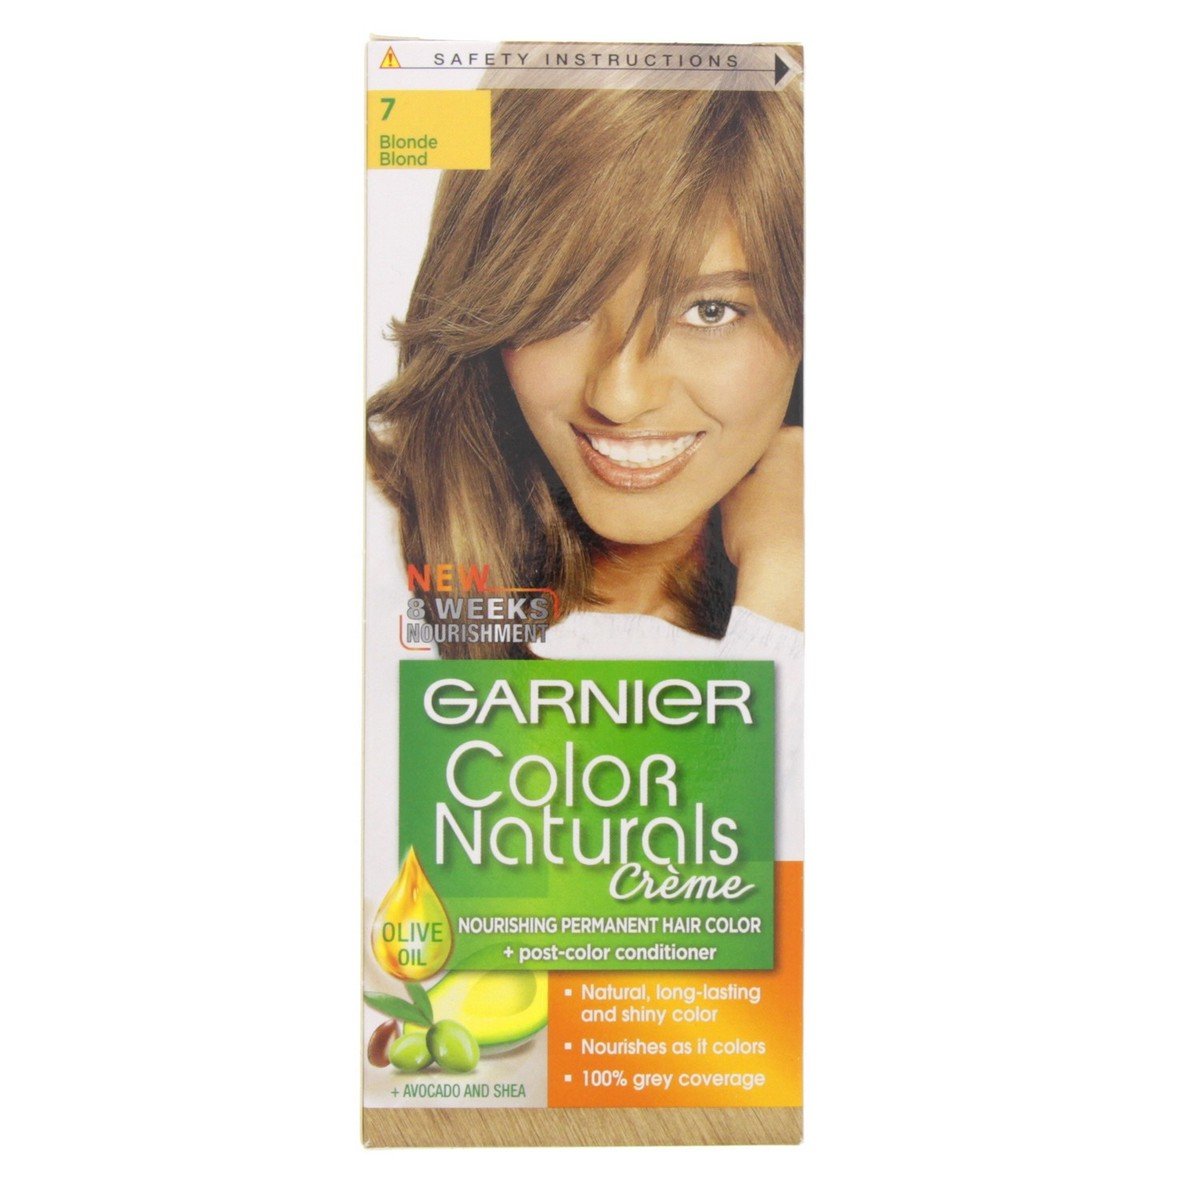 Garnier Colour Naturals 7 Blonde 1 pkt